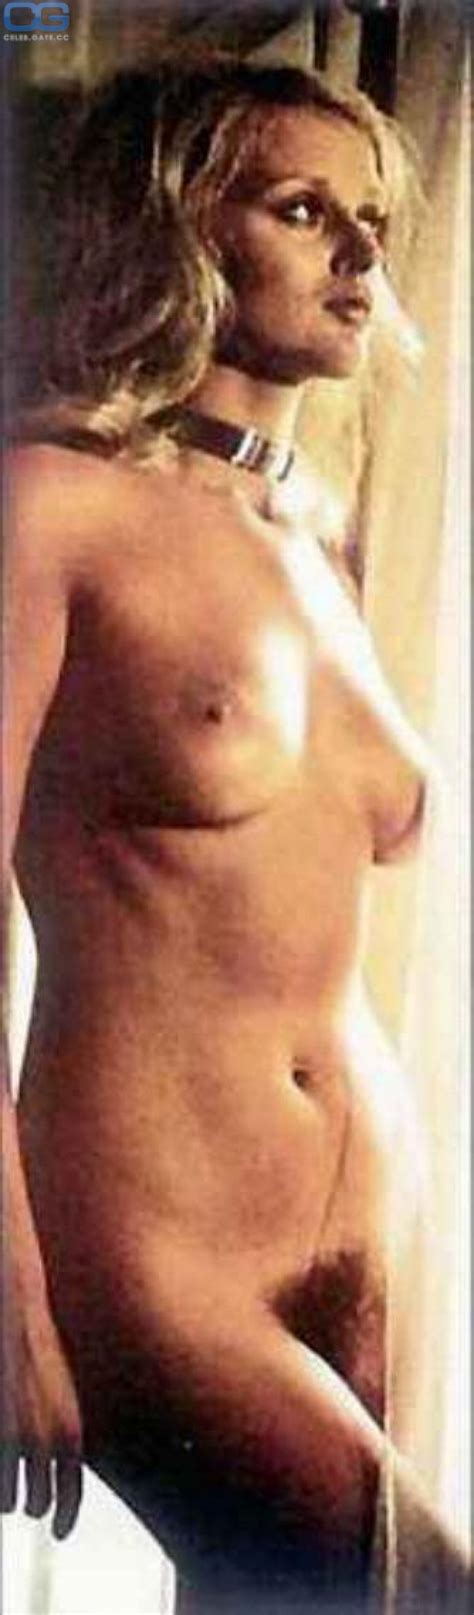 Sybil Danning Nackt Nacktbilder Playboy Nacktfotos Fakes Oben Ohne My